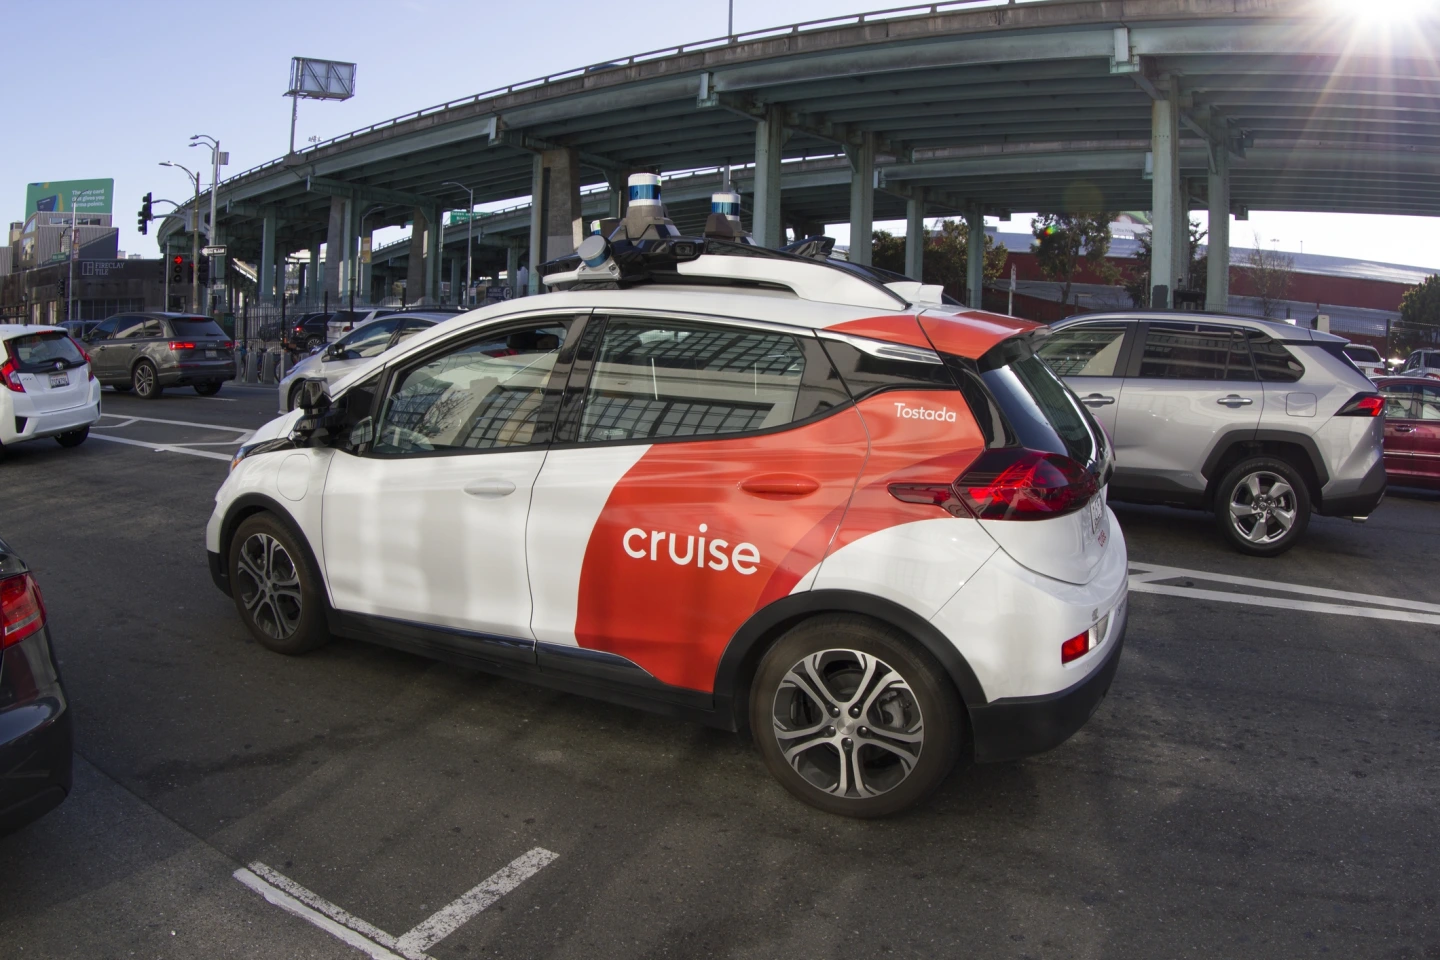 San Francisco, CA, USA - 23. Februar 2020: Ein selbstfahrendes Kreuzfahrtauto wird im SoMa-Distrikt von San Francisco getestet. Als Tochterunternehmen von GM testet und entwickelt Cruise autonome Fahrzeugtechnologie.